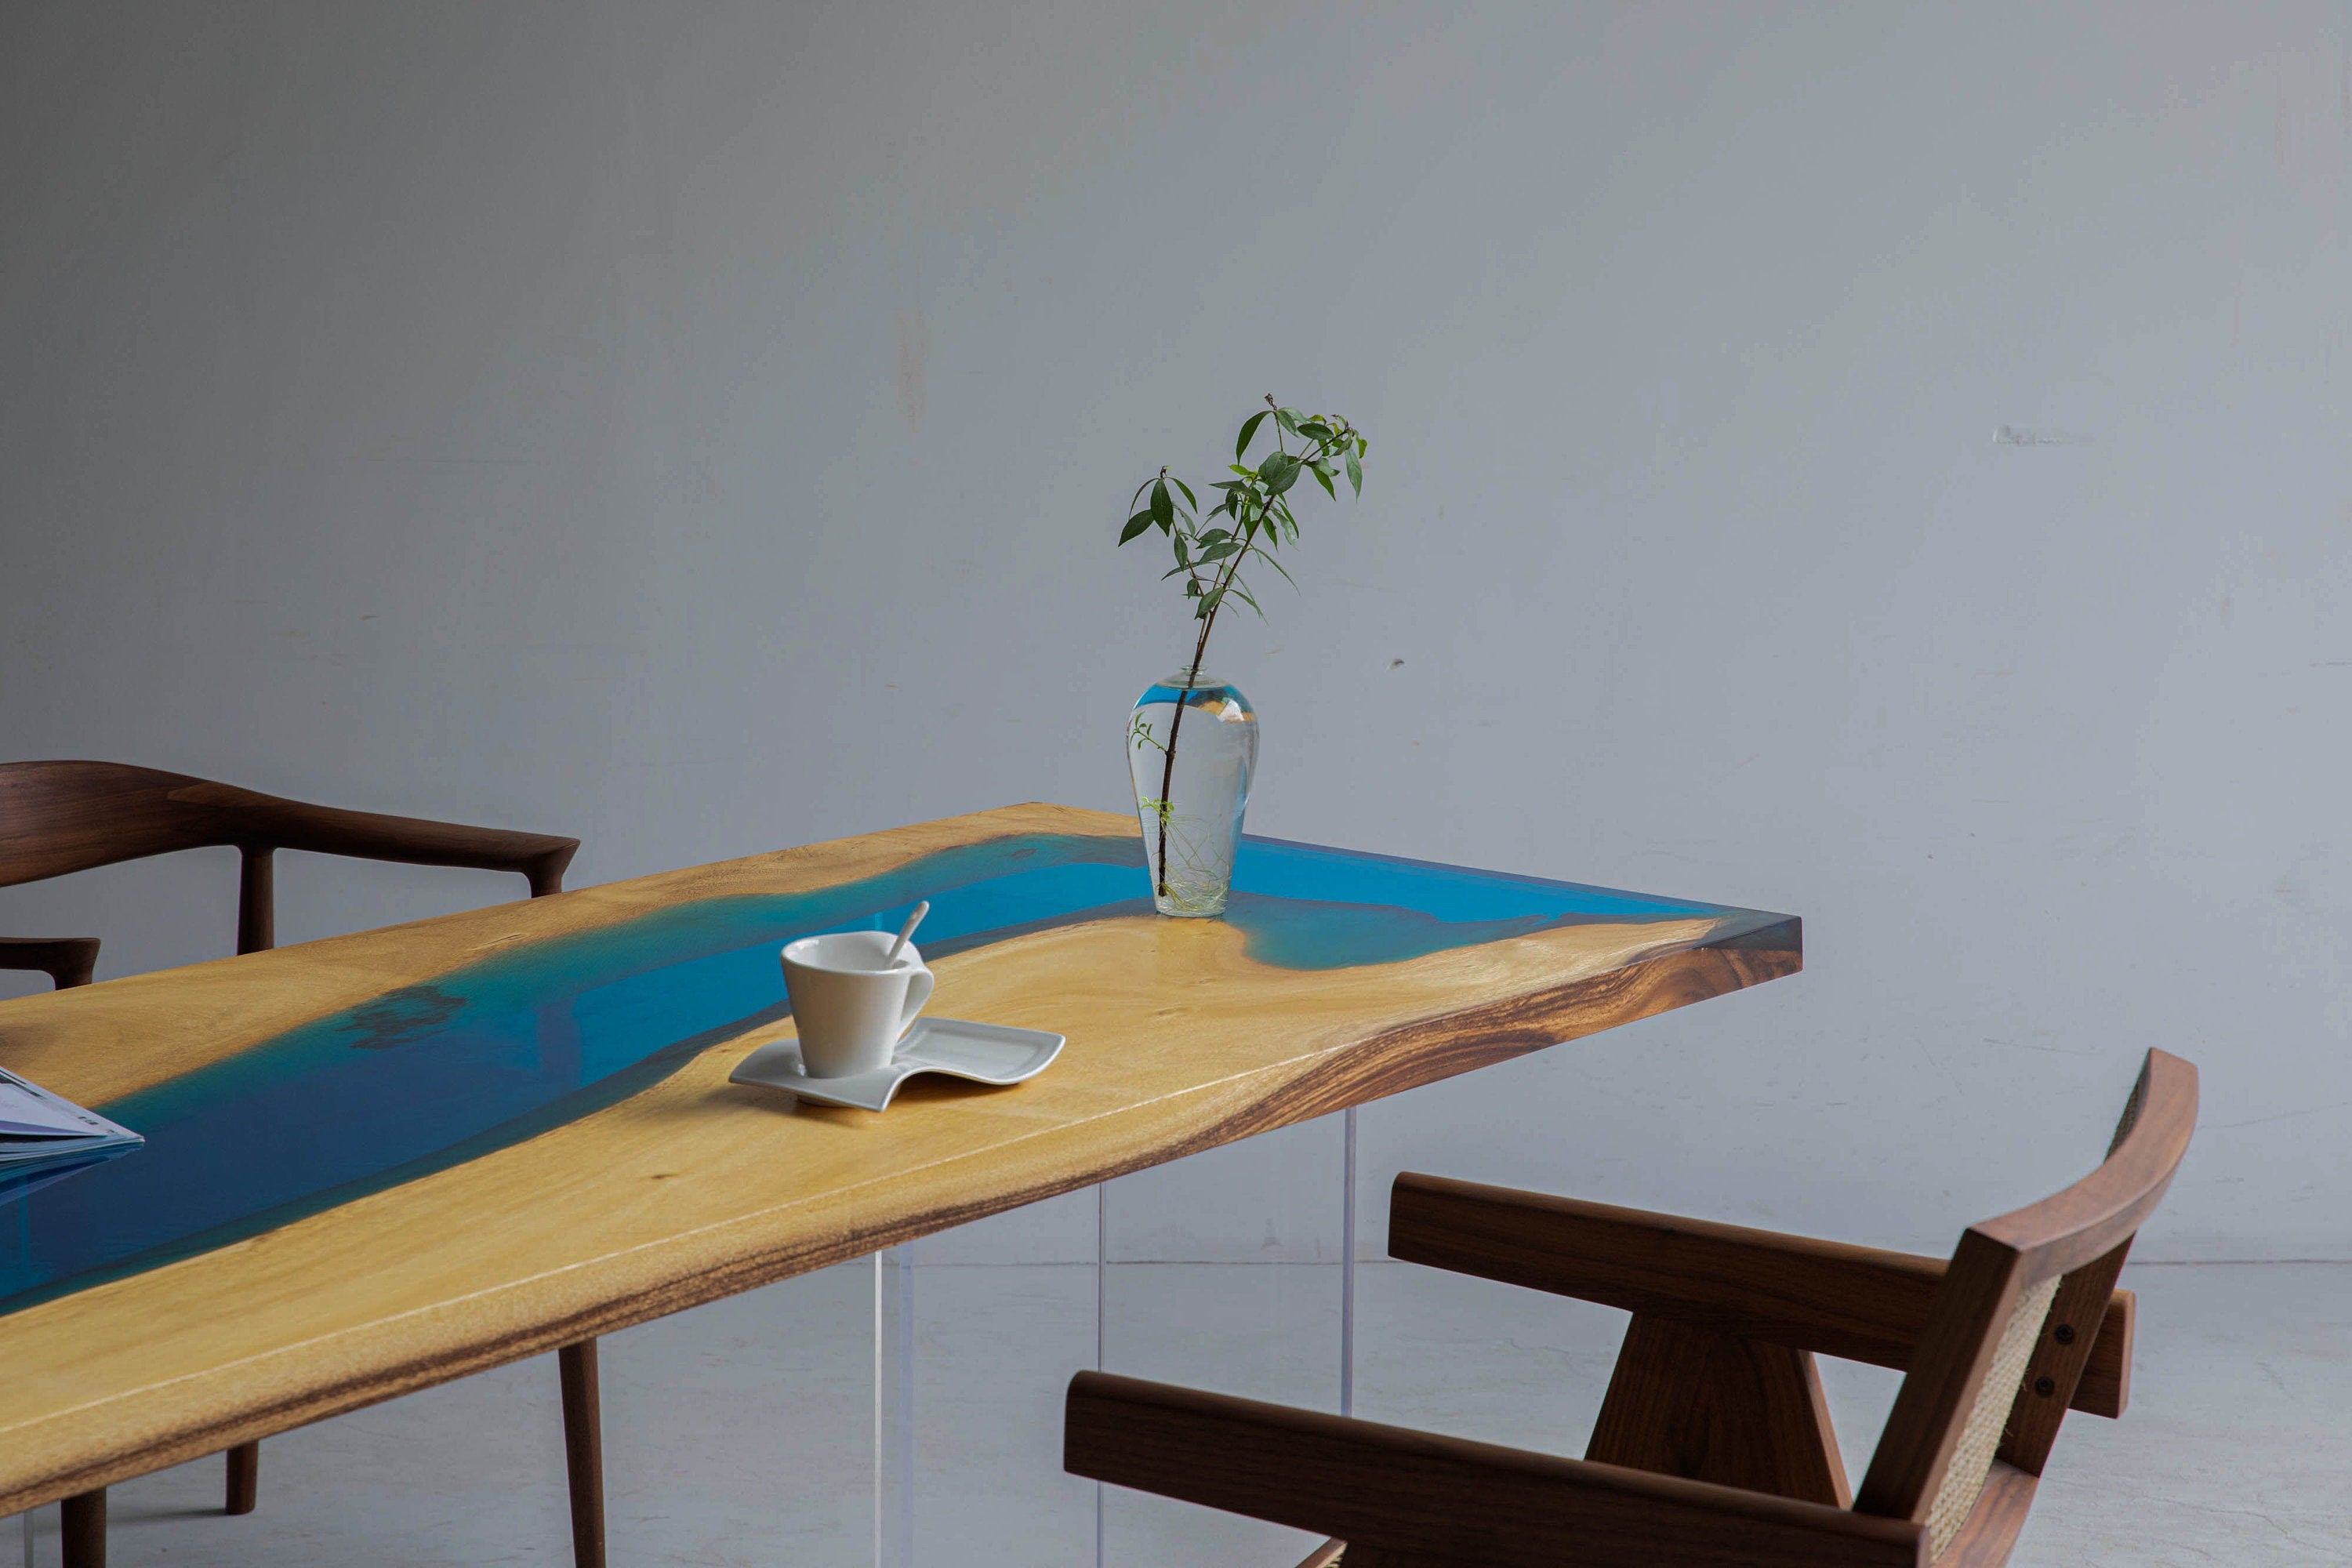 طاولة المطبخ الايبوكسي، طاولة النهر الأزرق، طاولة الايبوكسي النهر الأزرق، بلاطة الايبوكسي، مكتب الايبوكسي